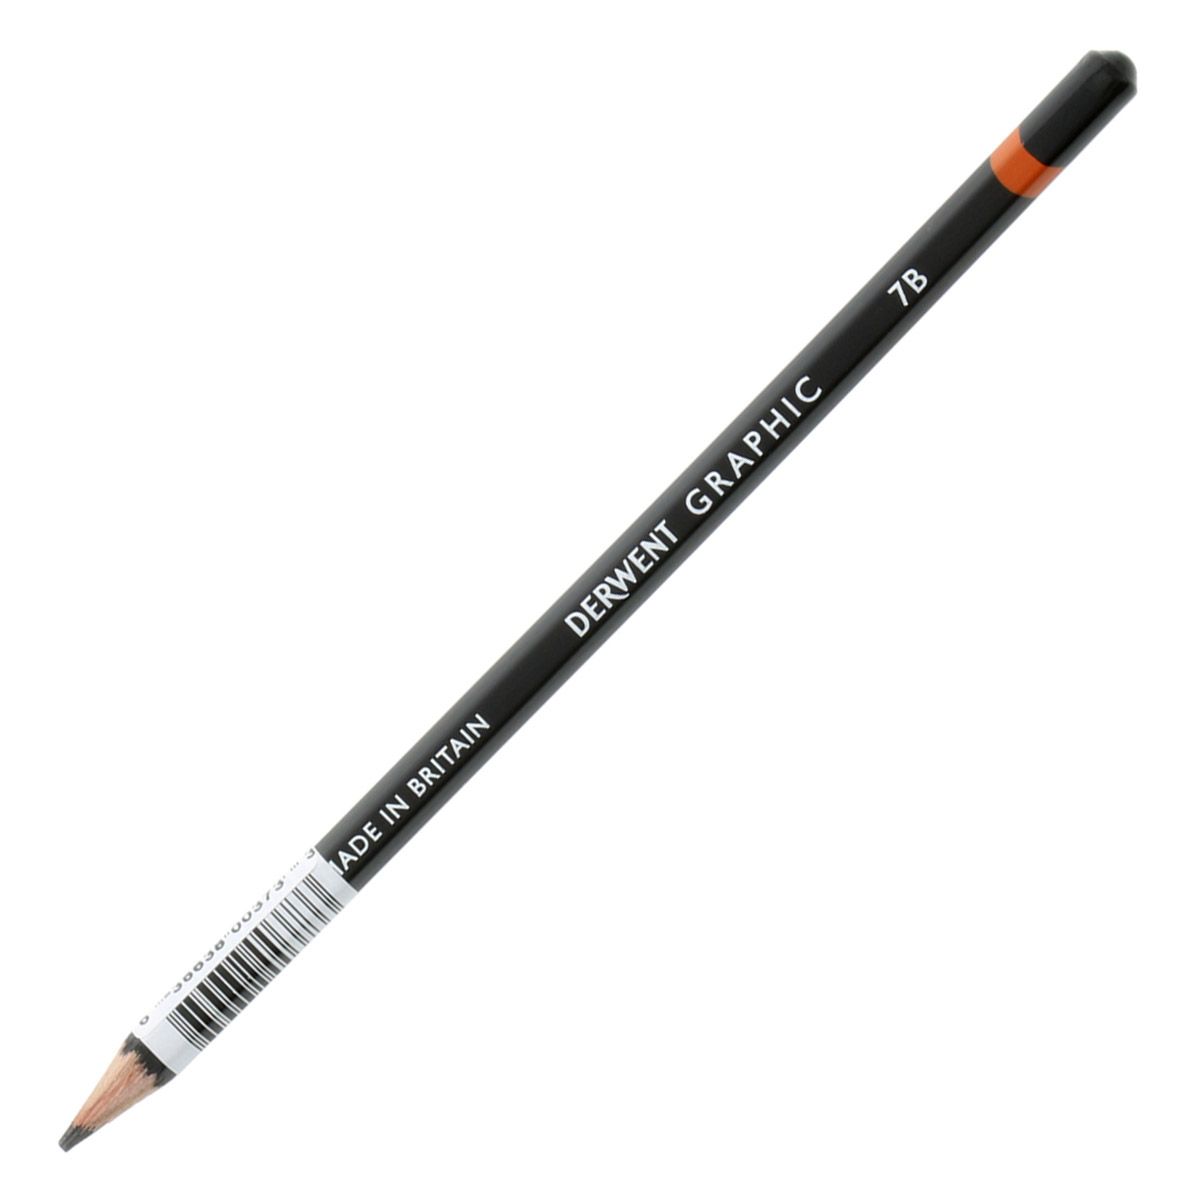 Derwent Graphic Pencil - 7B